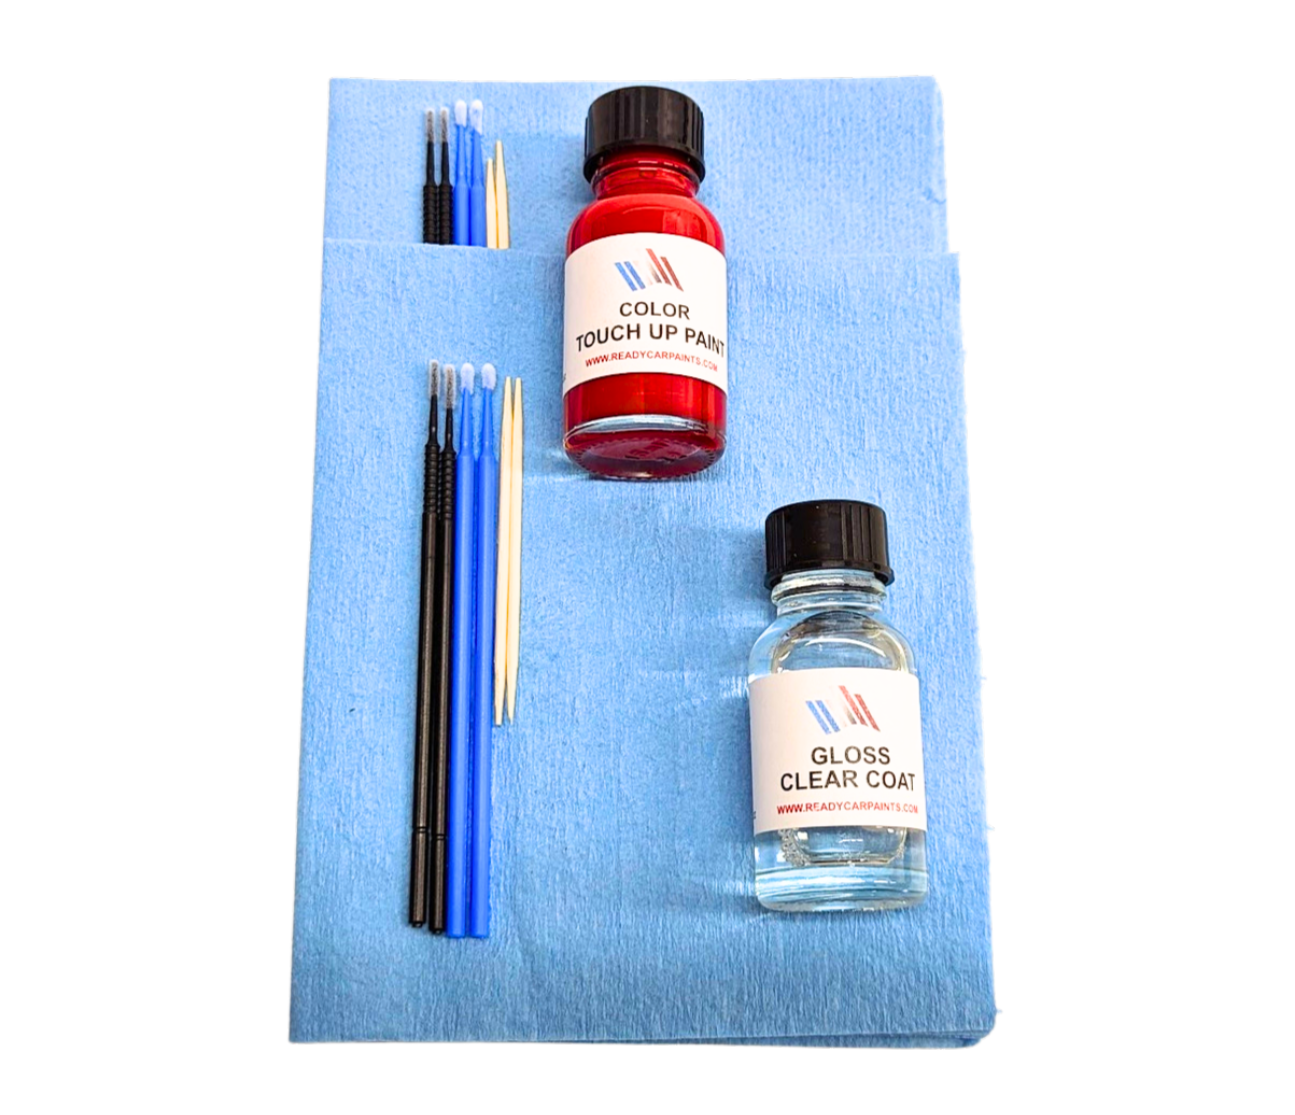 MERCEDES 896/5896 Brilliant Blue Metallic Touch Up Paint Kit 100% OEM Color Match